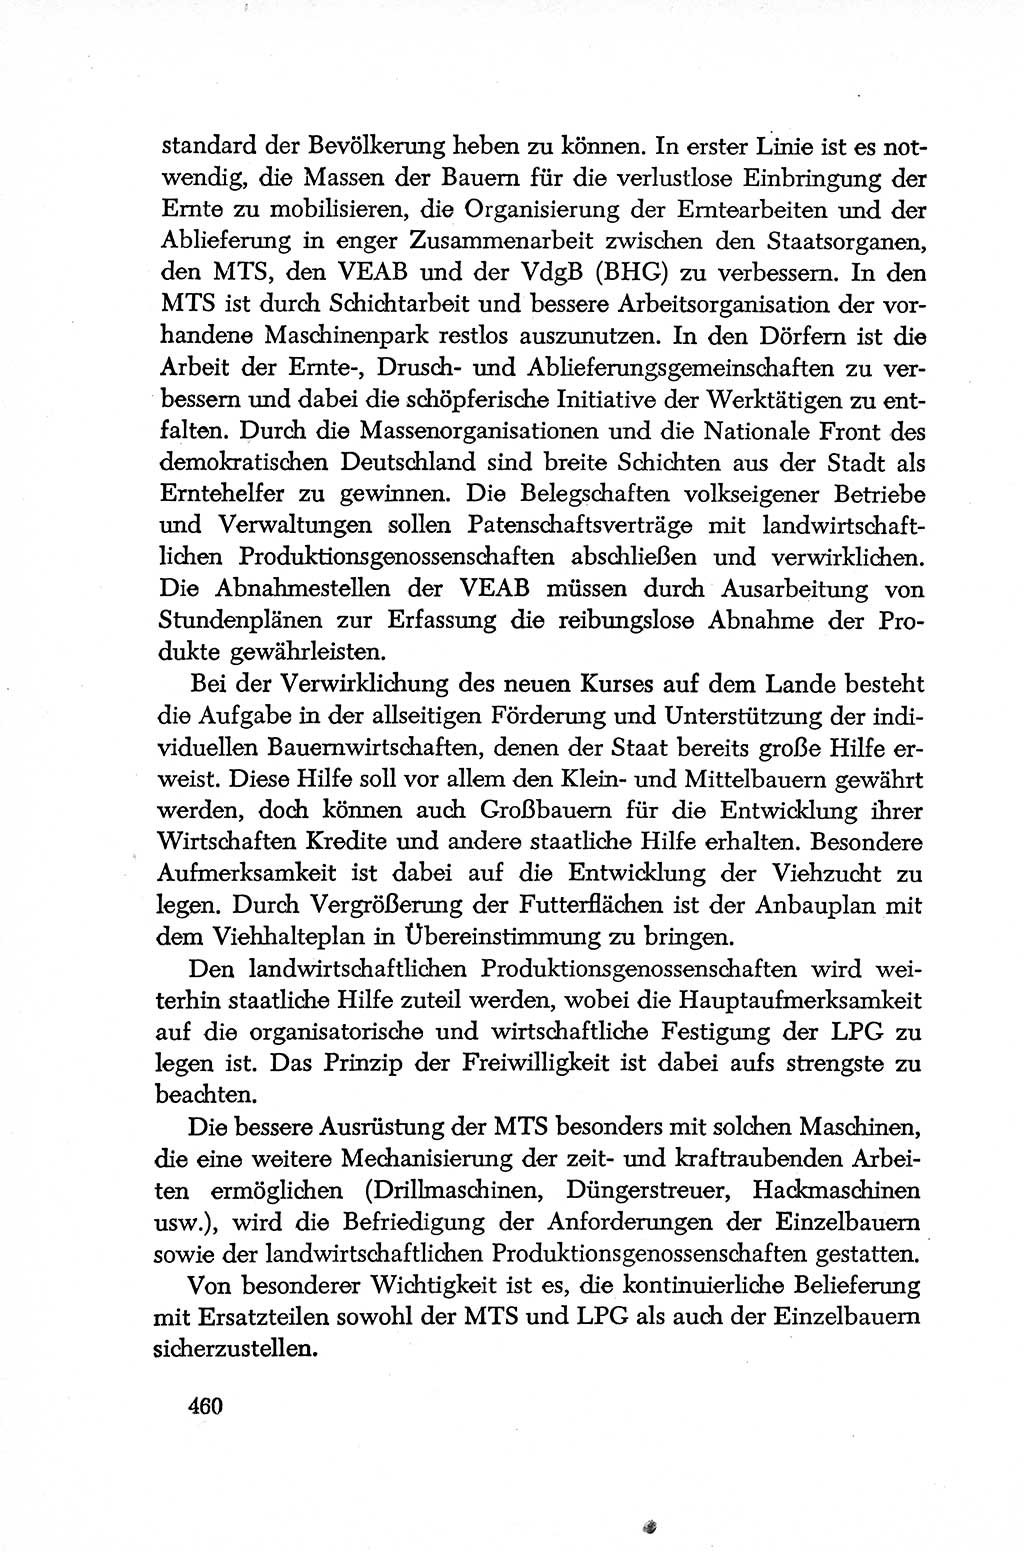 Dokumente der Sozialistischen Einheitspartei Deutschlands (SED) [Deutsche Demokratische Republik (DDR)] 1952-1953, Seite 460 (Dok. SED DDR 1952-1953, S. 460)